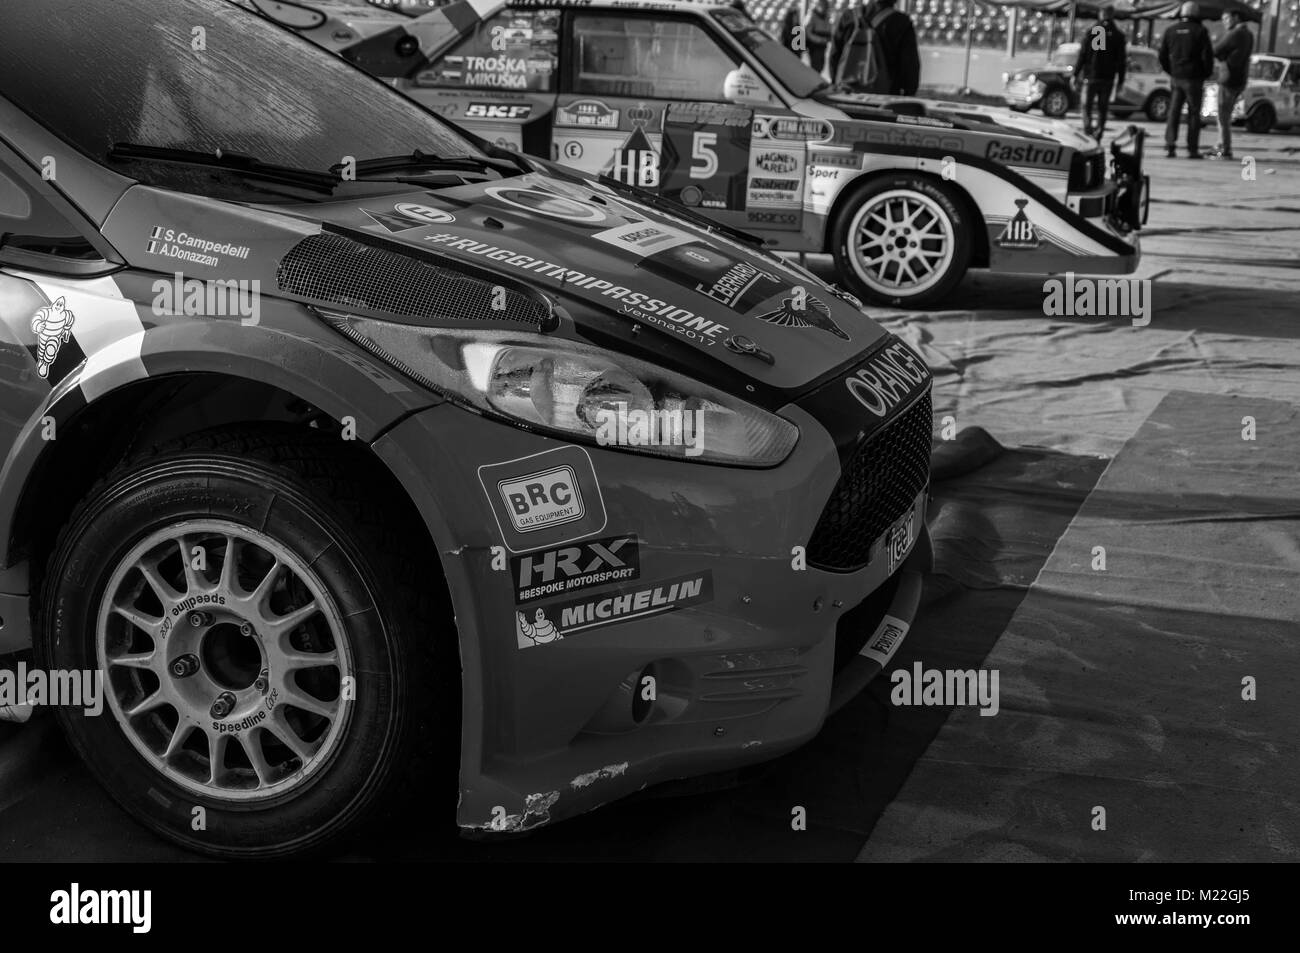 FORD FIESTA R5 rallye de voitures de course anciennes orange dans la vieille voiture de course LA LÉGENDE rallye 2017 Banque D'Images